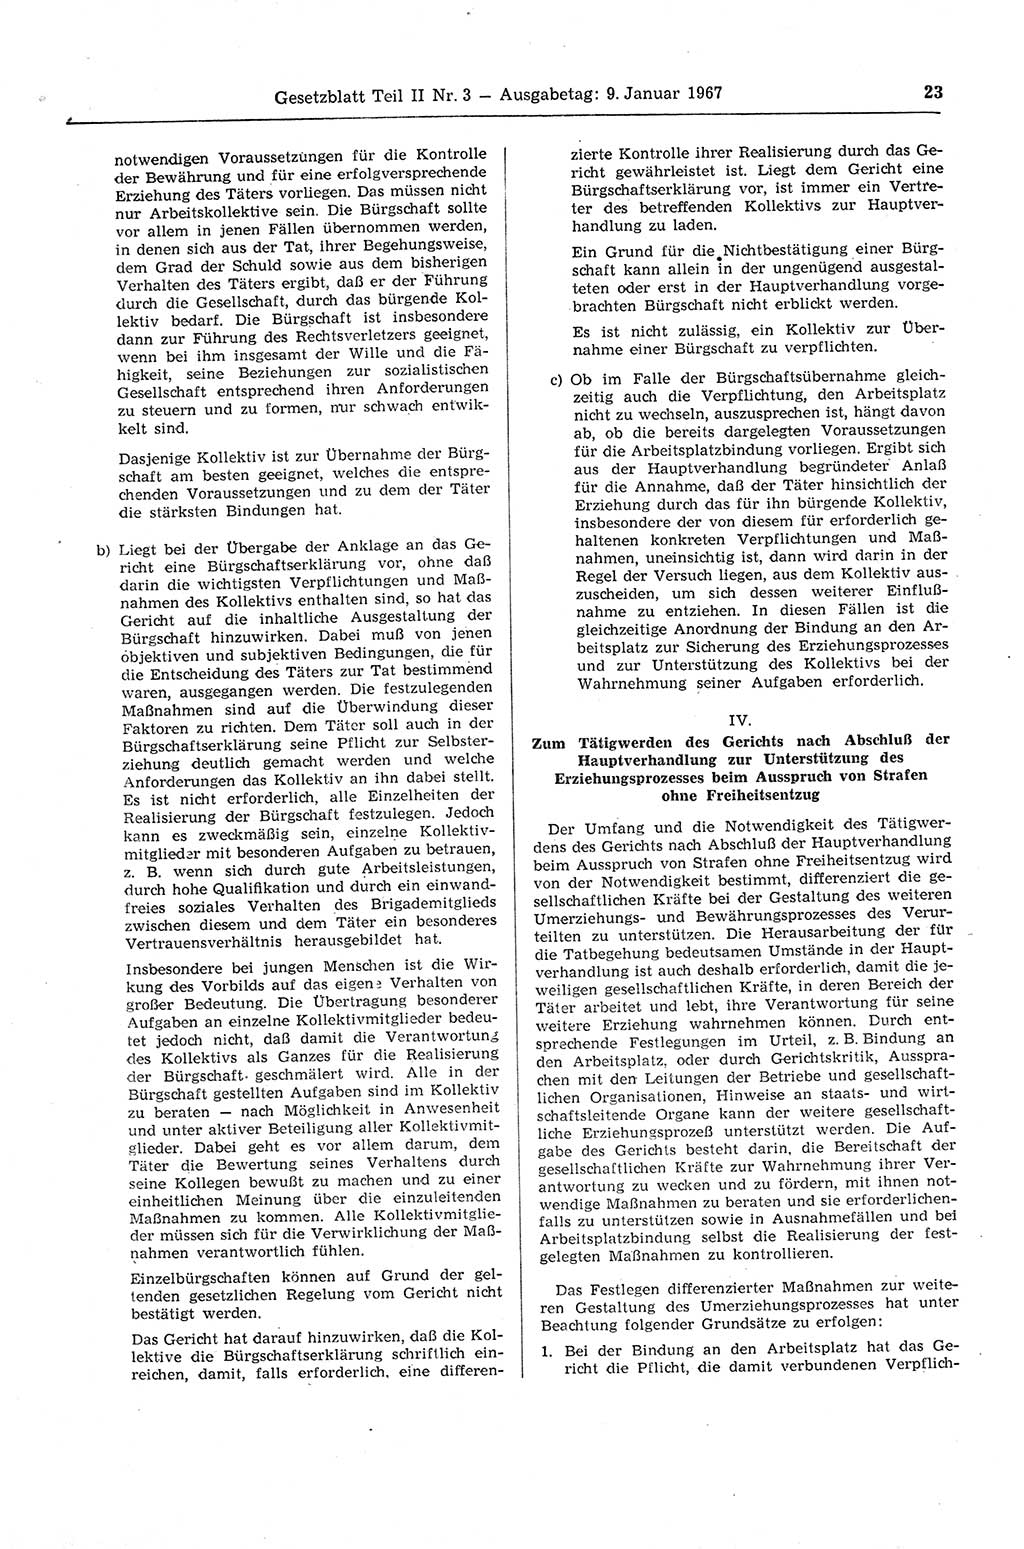 Gesetzblatt (GBl.) der Deutschen Demokratischen Republik (DDR) Teil ⅠⅠ 1967, Seite 23 (GBl. DDR ⅠⅠ 1967, S. 23)